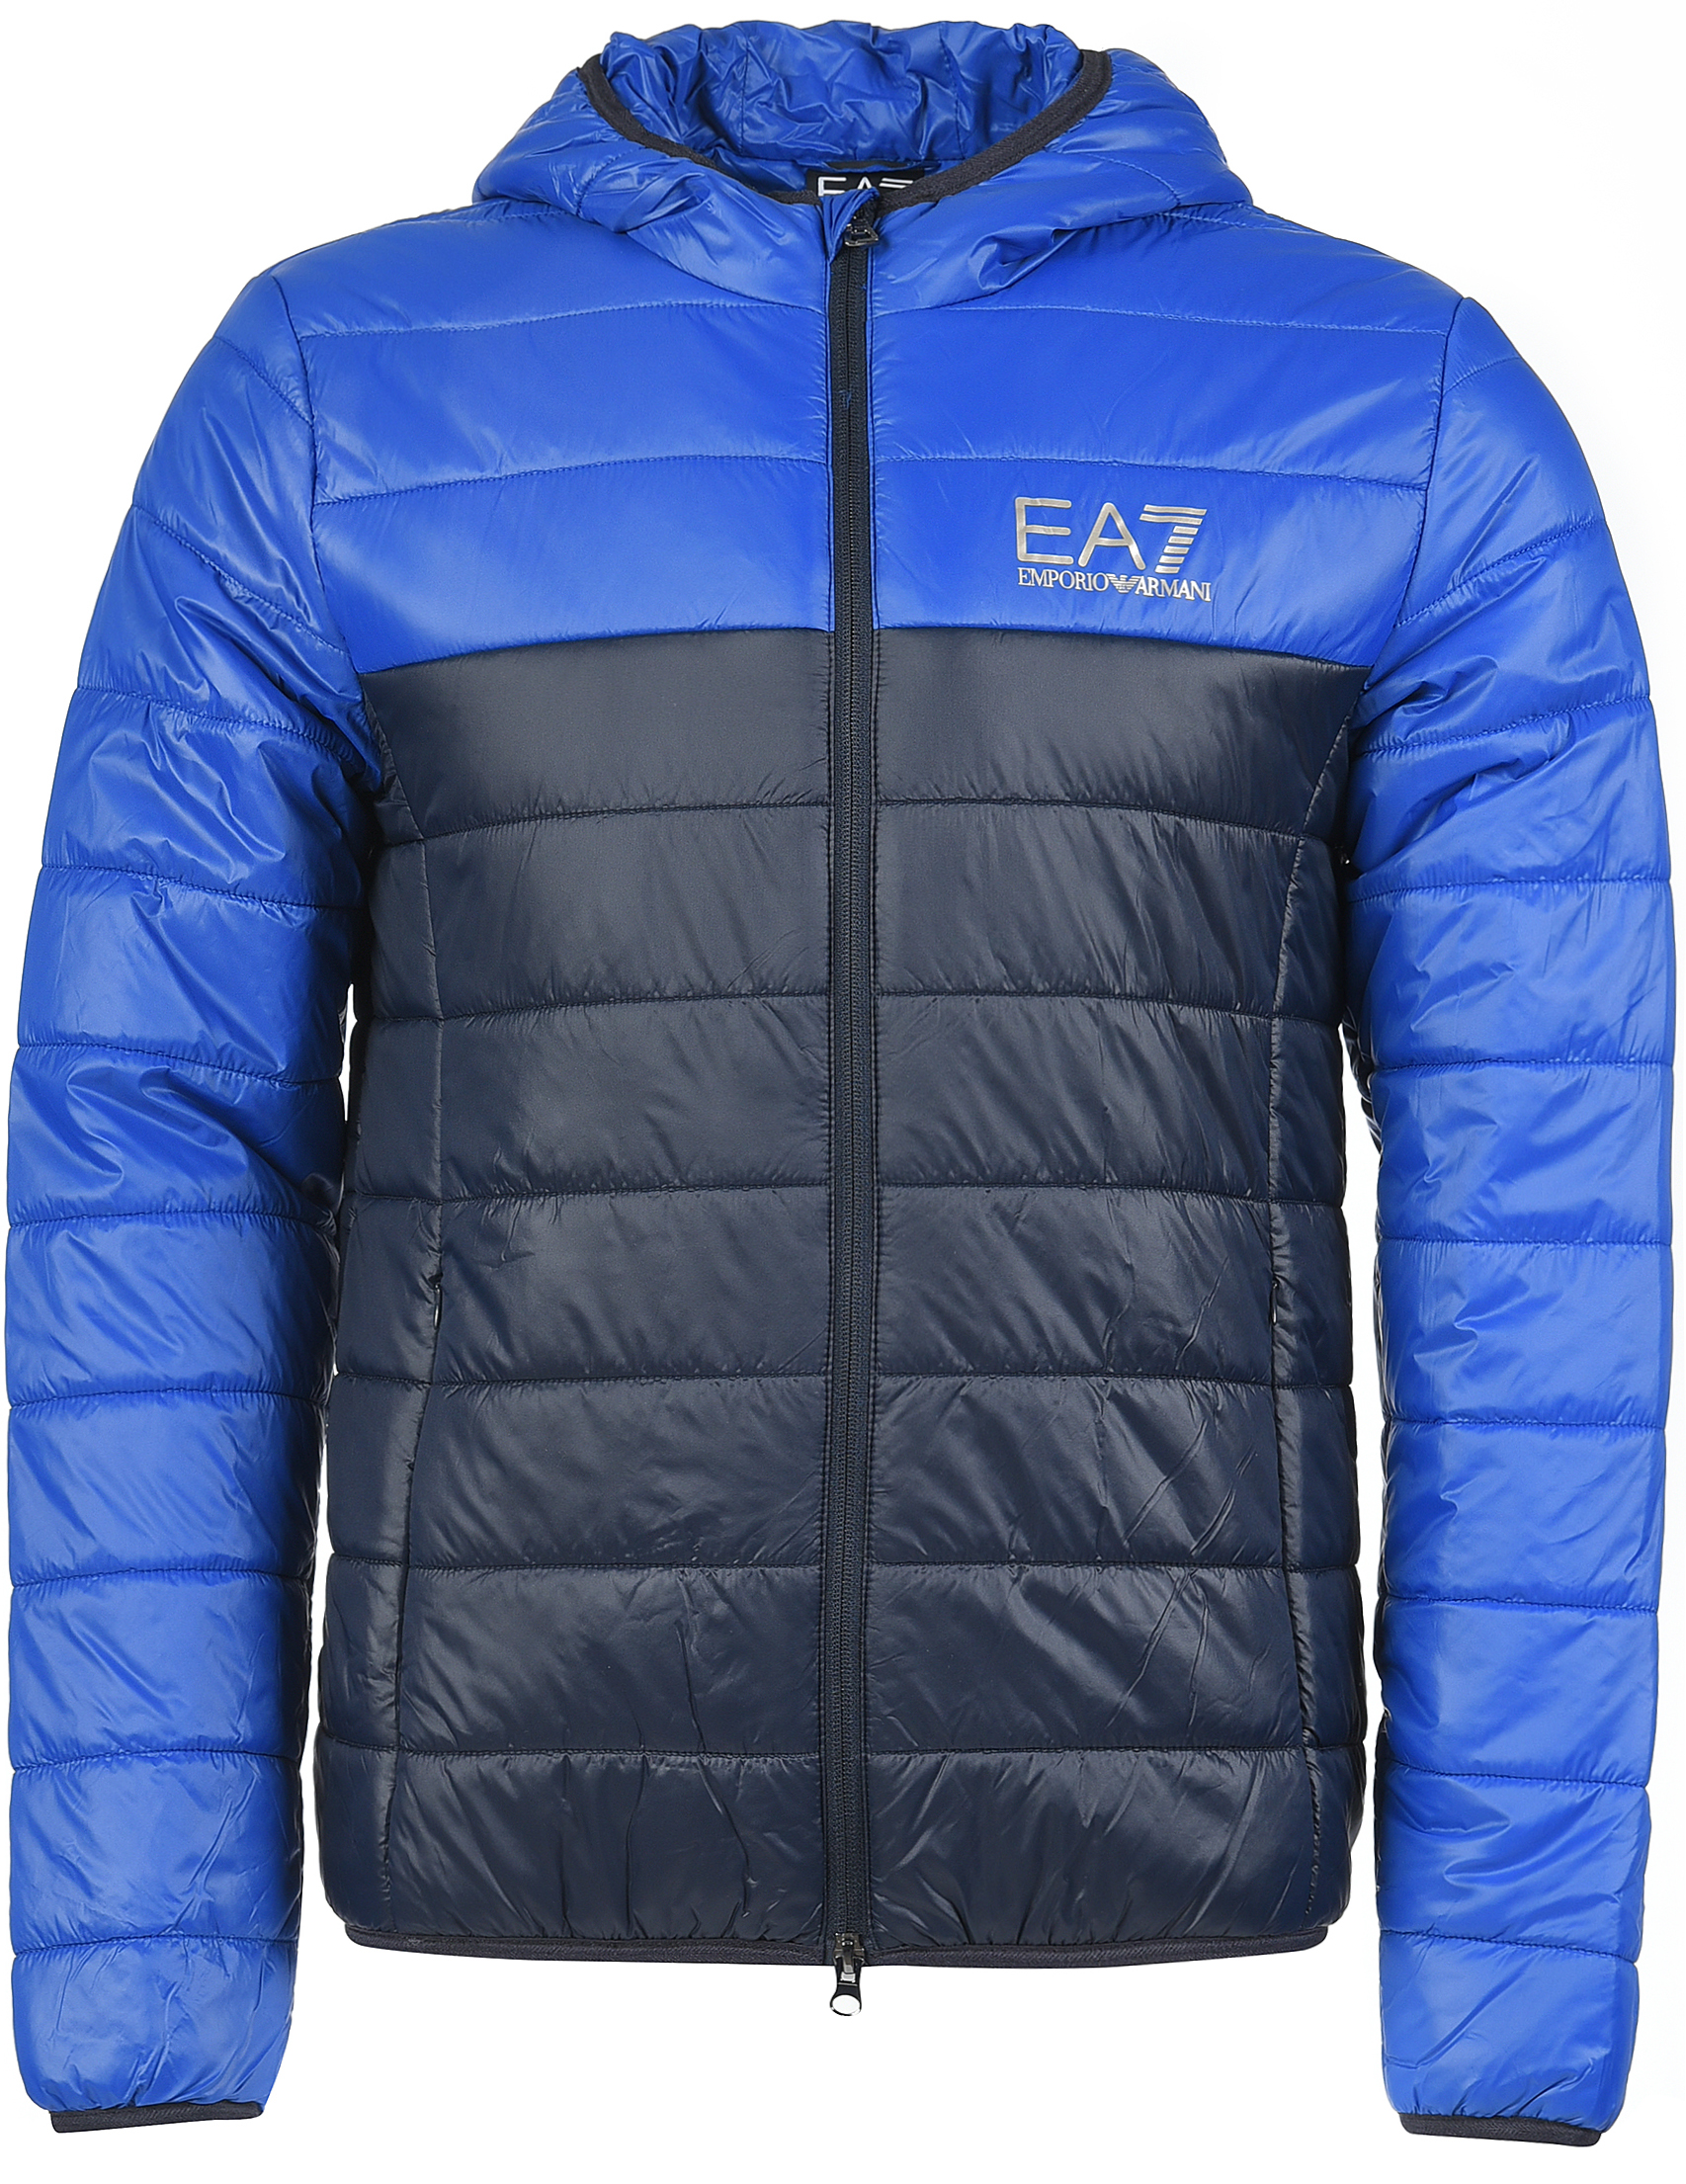 Ea7 куртка мужская. Ea7 Emporio Armani куртка мужская зимняя. Ea7 Emporio Armani зимняя куртка. Пуховик Emporio Armani ea7 мужской. Пуховик ea7 Emporio Armani, цвет синий, 419121.